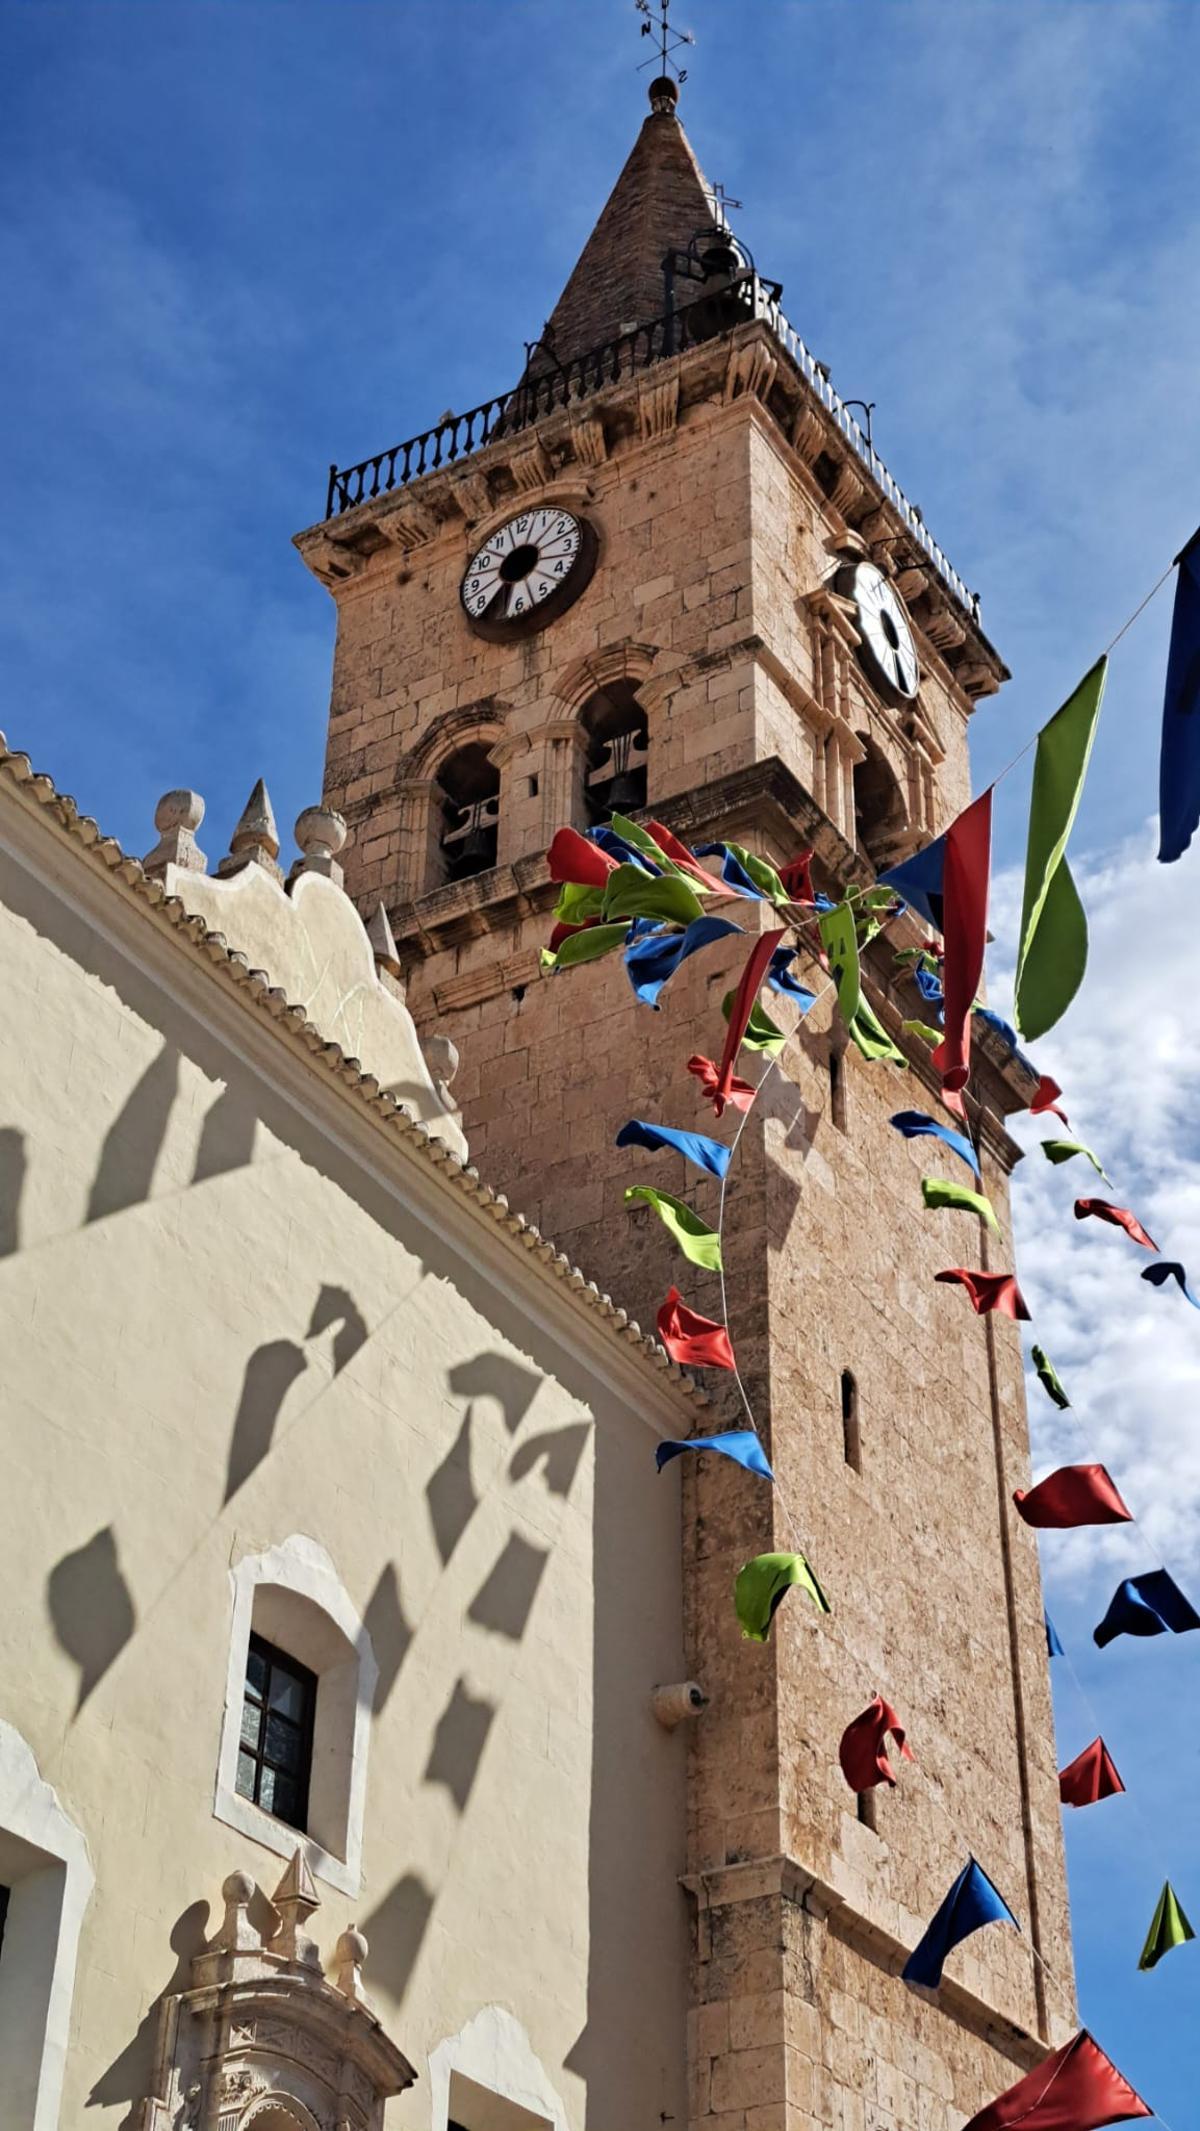 La torre de la iglesia de Santa María, cuyos forjados es necesario reforzar para devolver el reloj restaurado